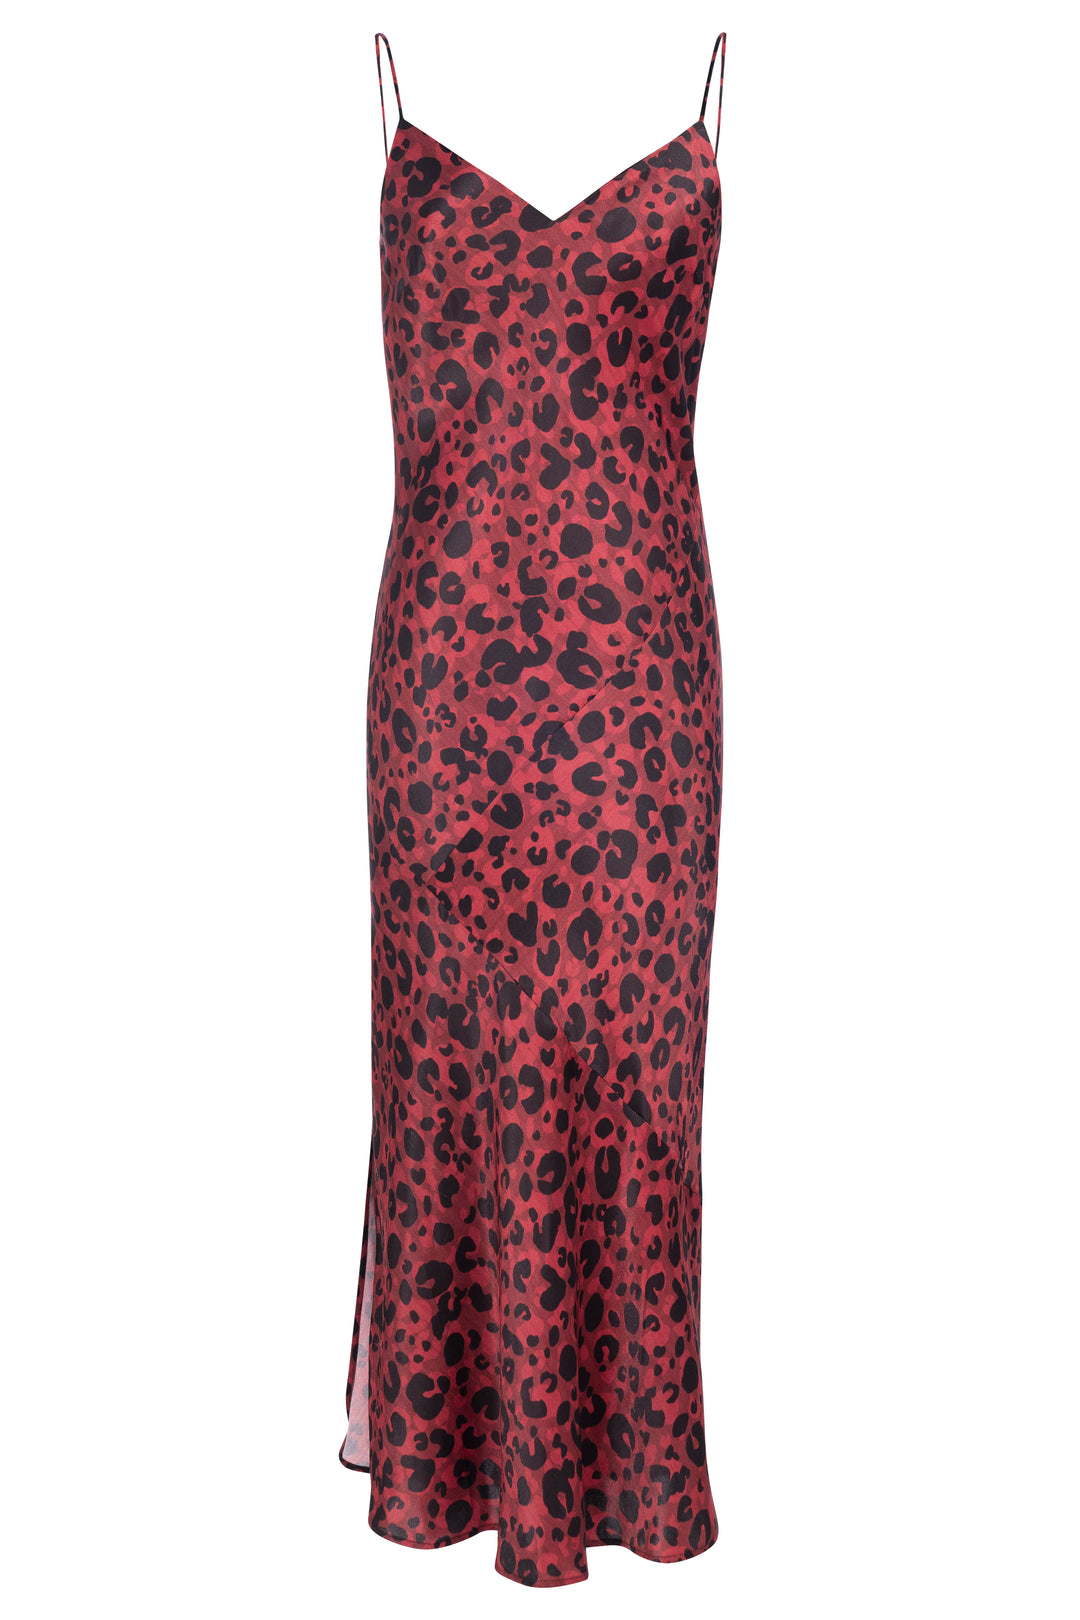 Leopard Print Slip Dress - SERRANO